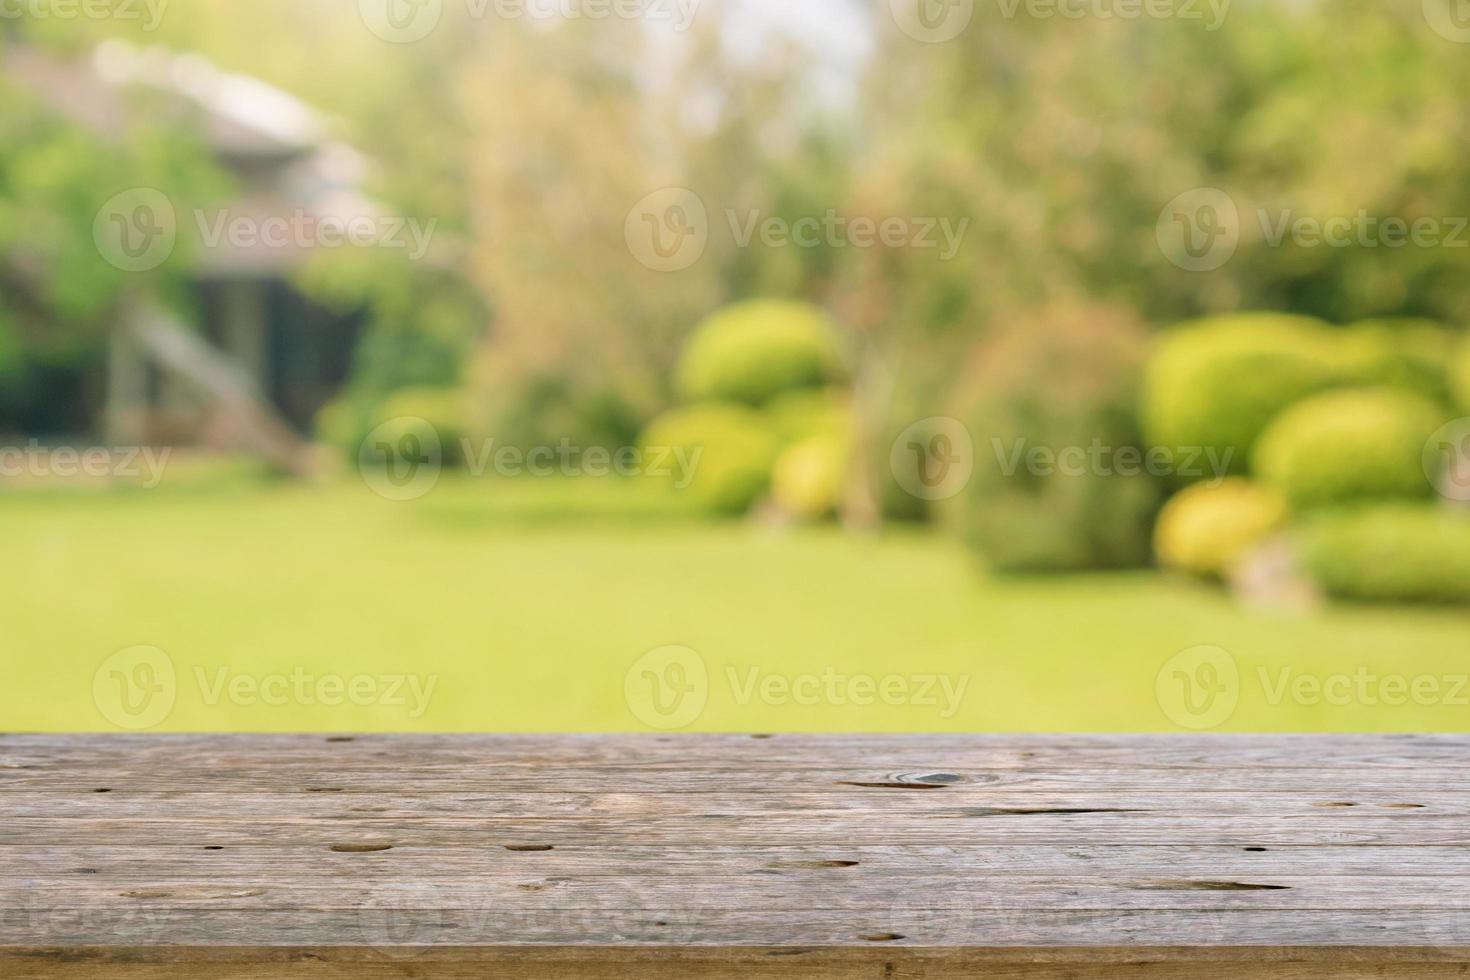 Dessus de table en bois vide avec arrière-plan flou abstrait parc jardin photo